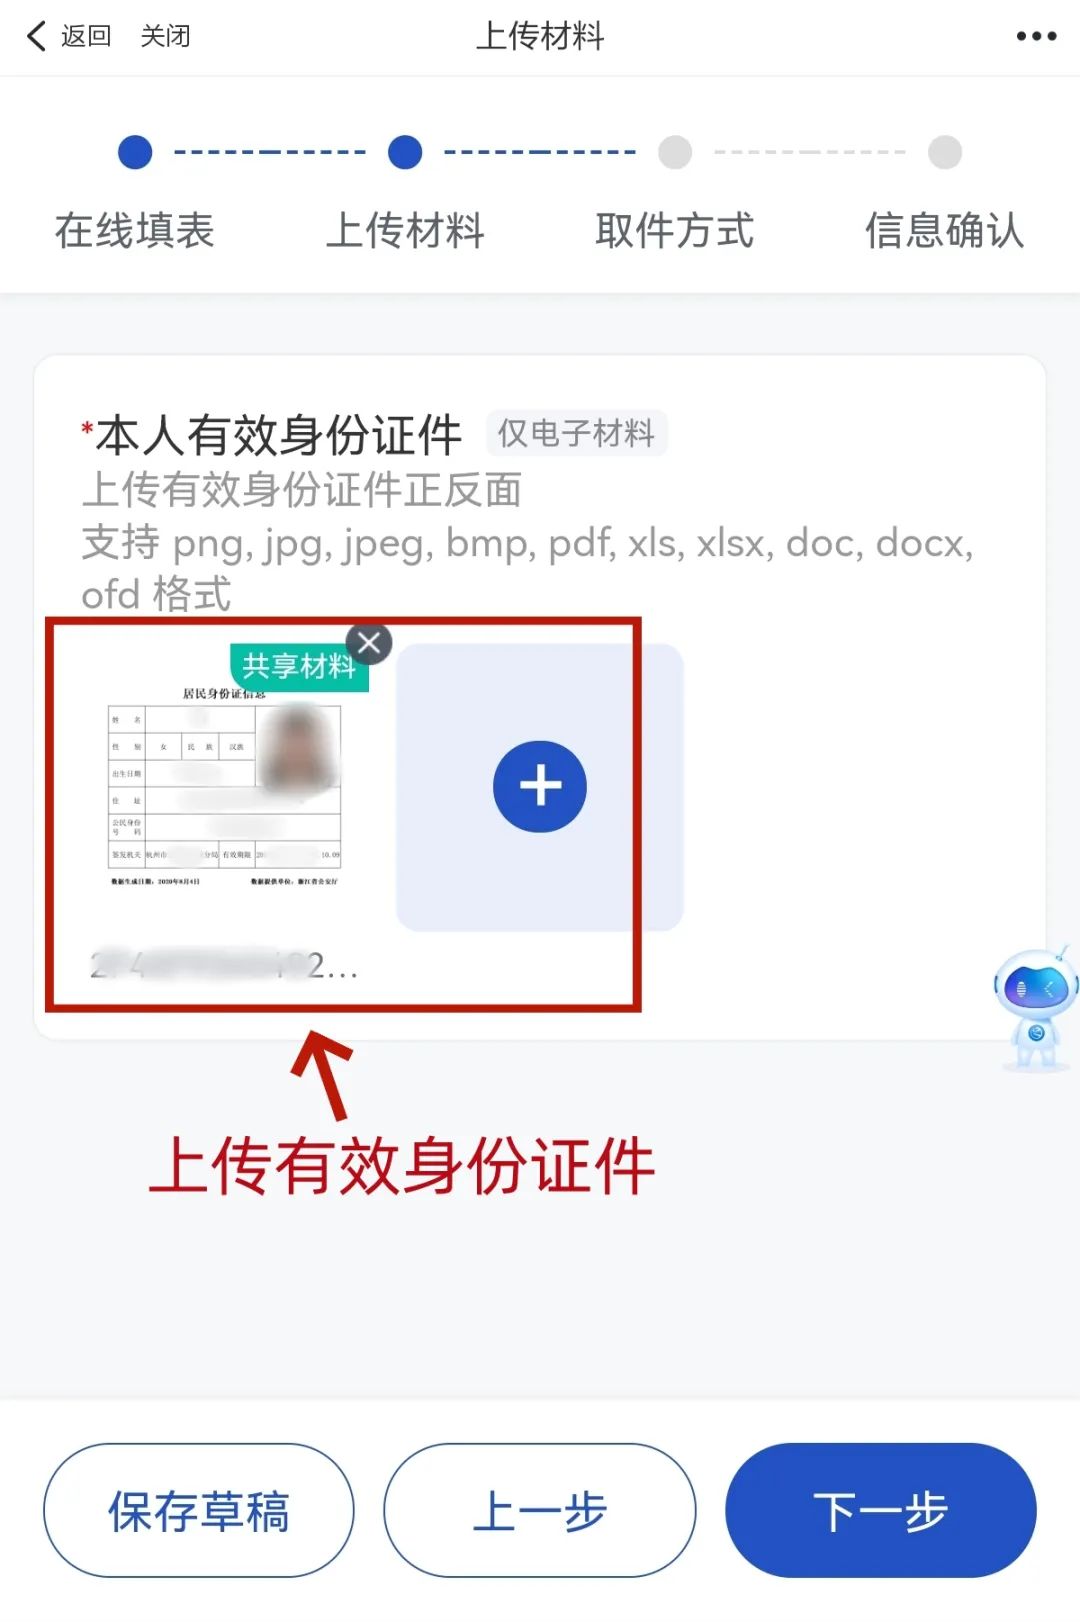 杭州网上办理无犯罪记录证明教程分享